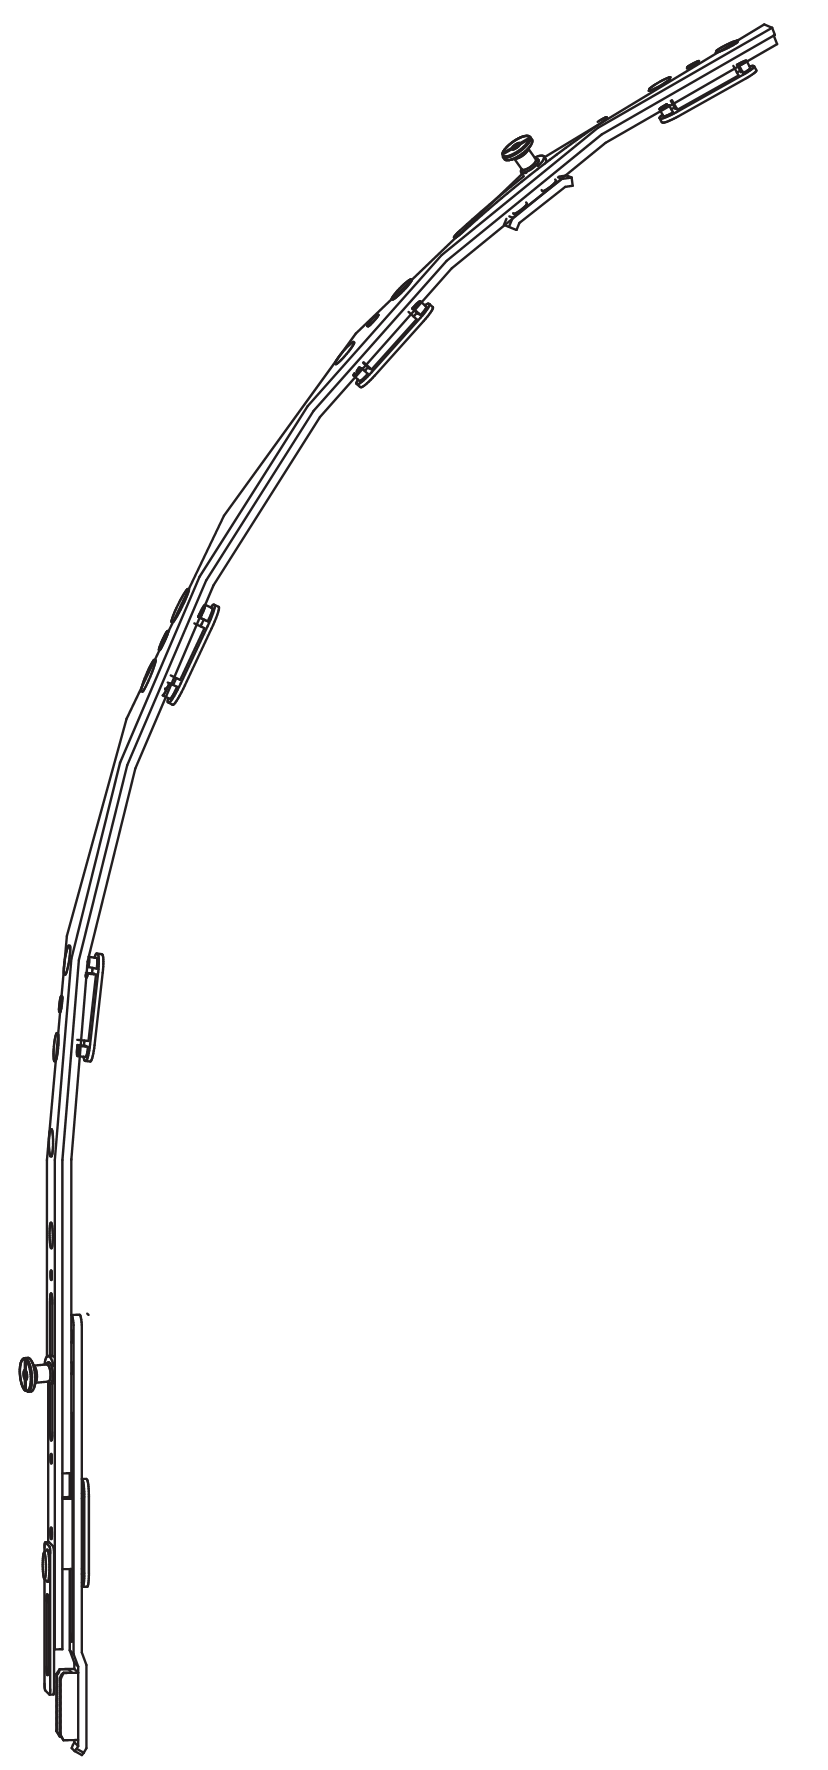 GU-ITALIA -  Chiusura Supplementare UNI-JET elemento di collegamento per arco e trapezio - hbb 911 - 1250